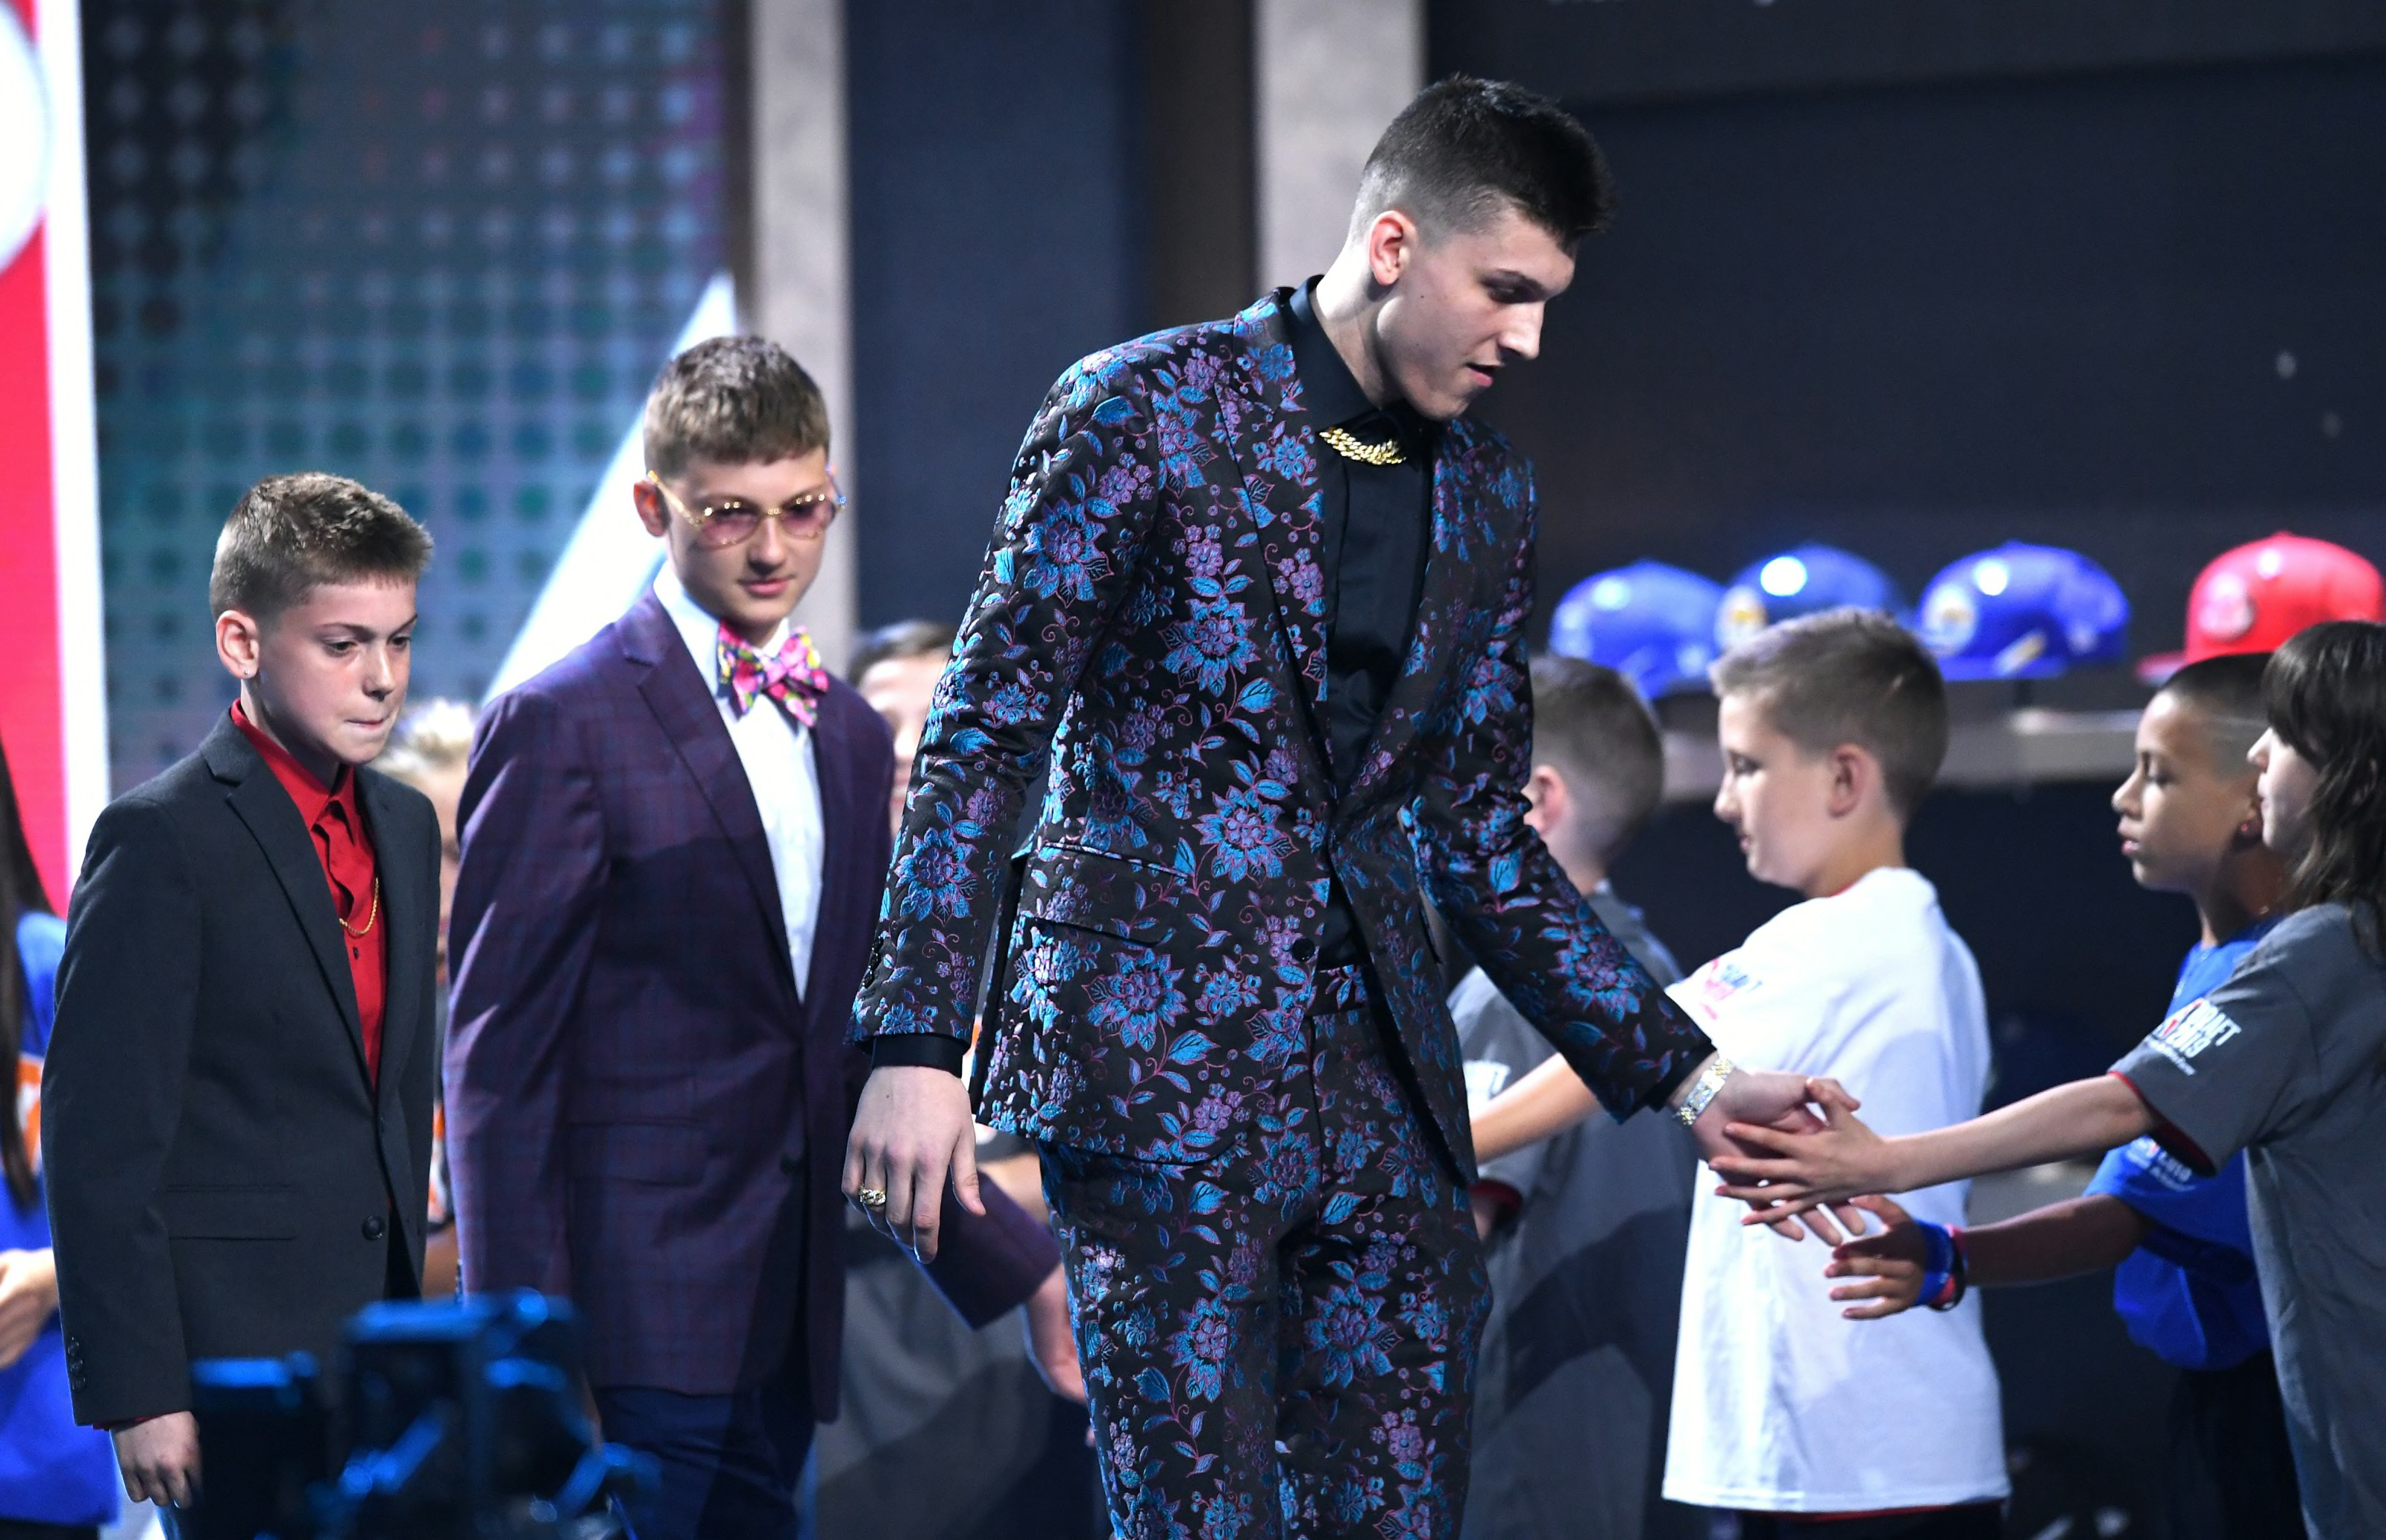 NBA Draft photos: The suits